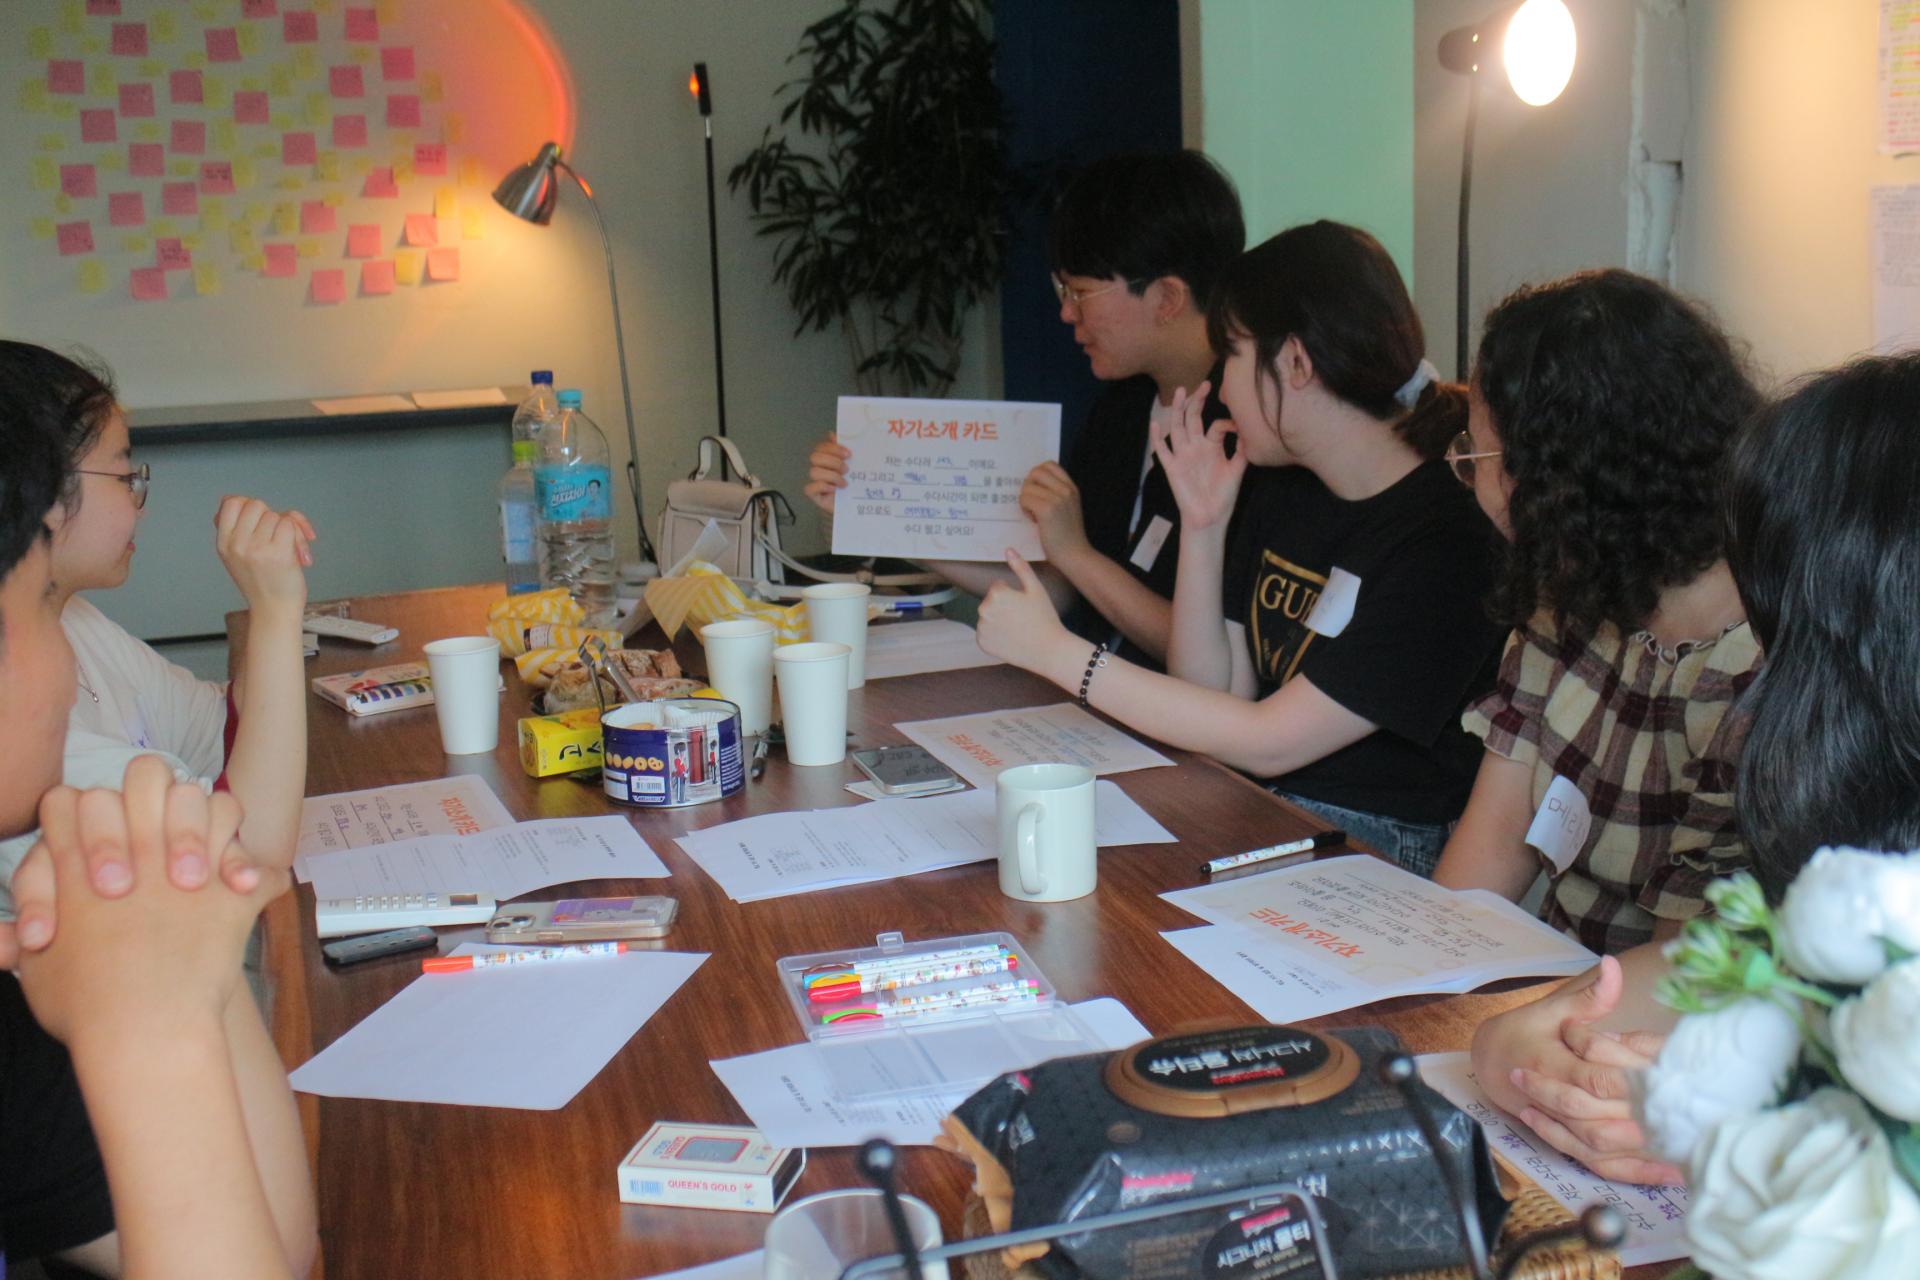 참여자들이 책상에 모여 앉아있는 사진. '자기소개 카드'라고 적힌 종이를 들고 발표하는 참여자를 보고 있다.